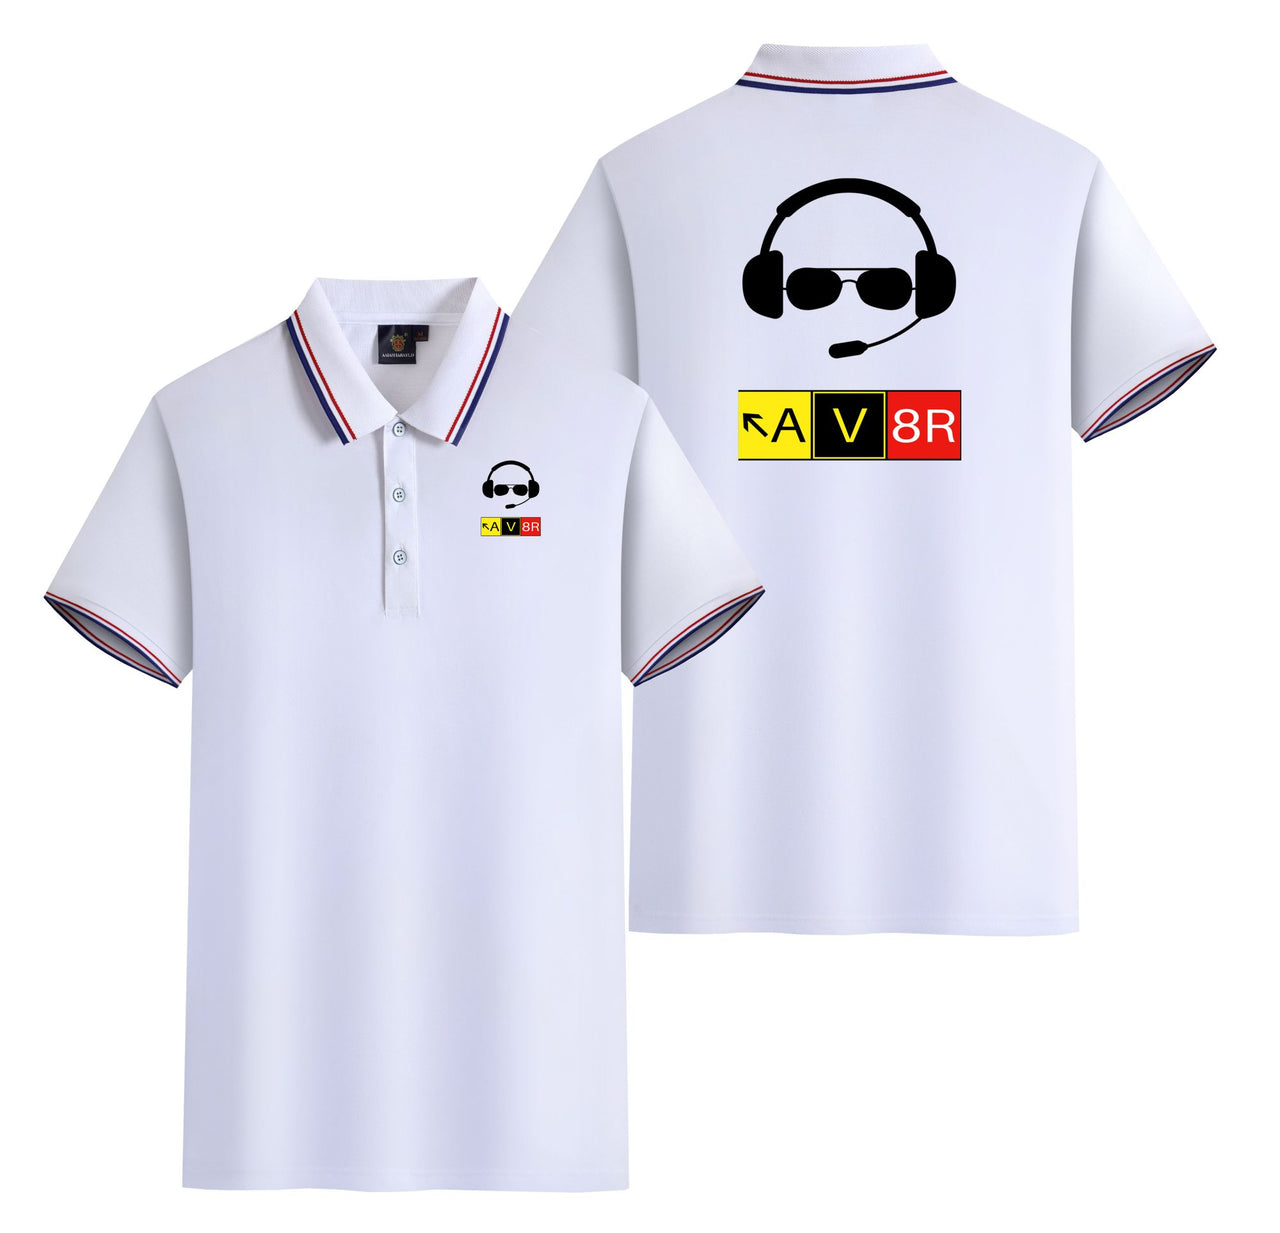 AV8R 2 Designed Stylish Polo T-Shirts (Double-Side)